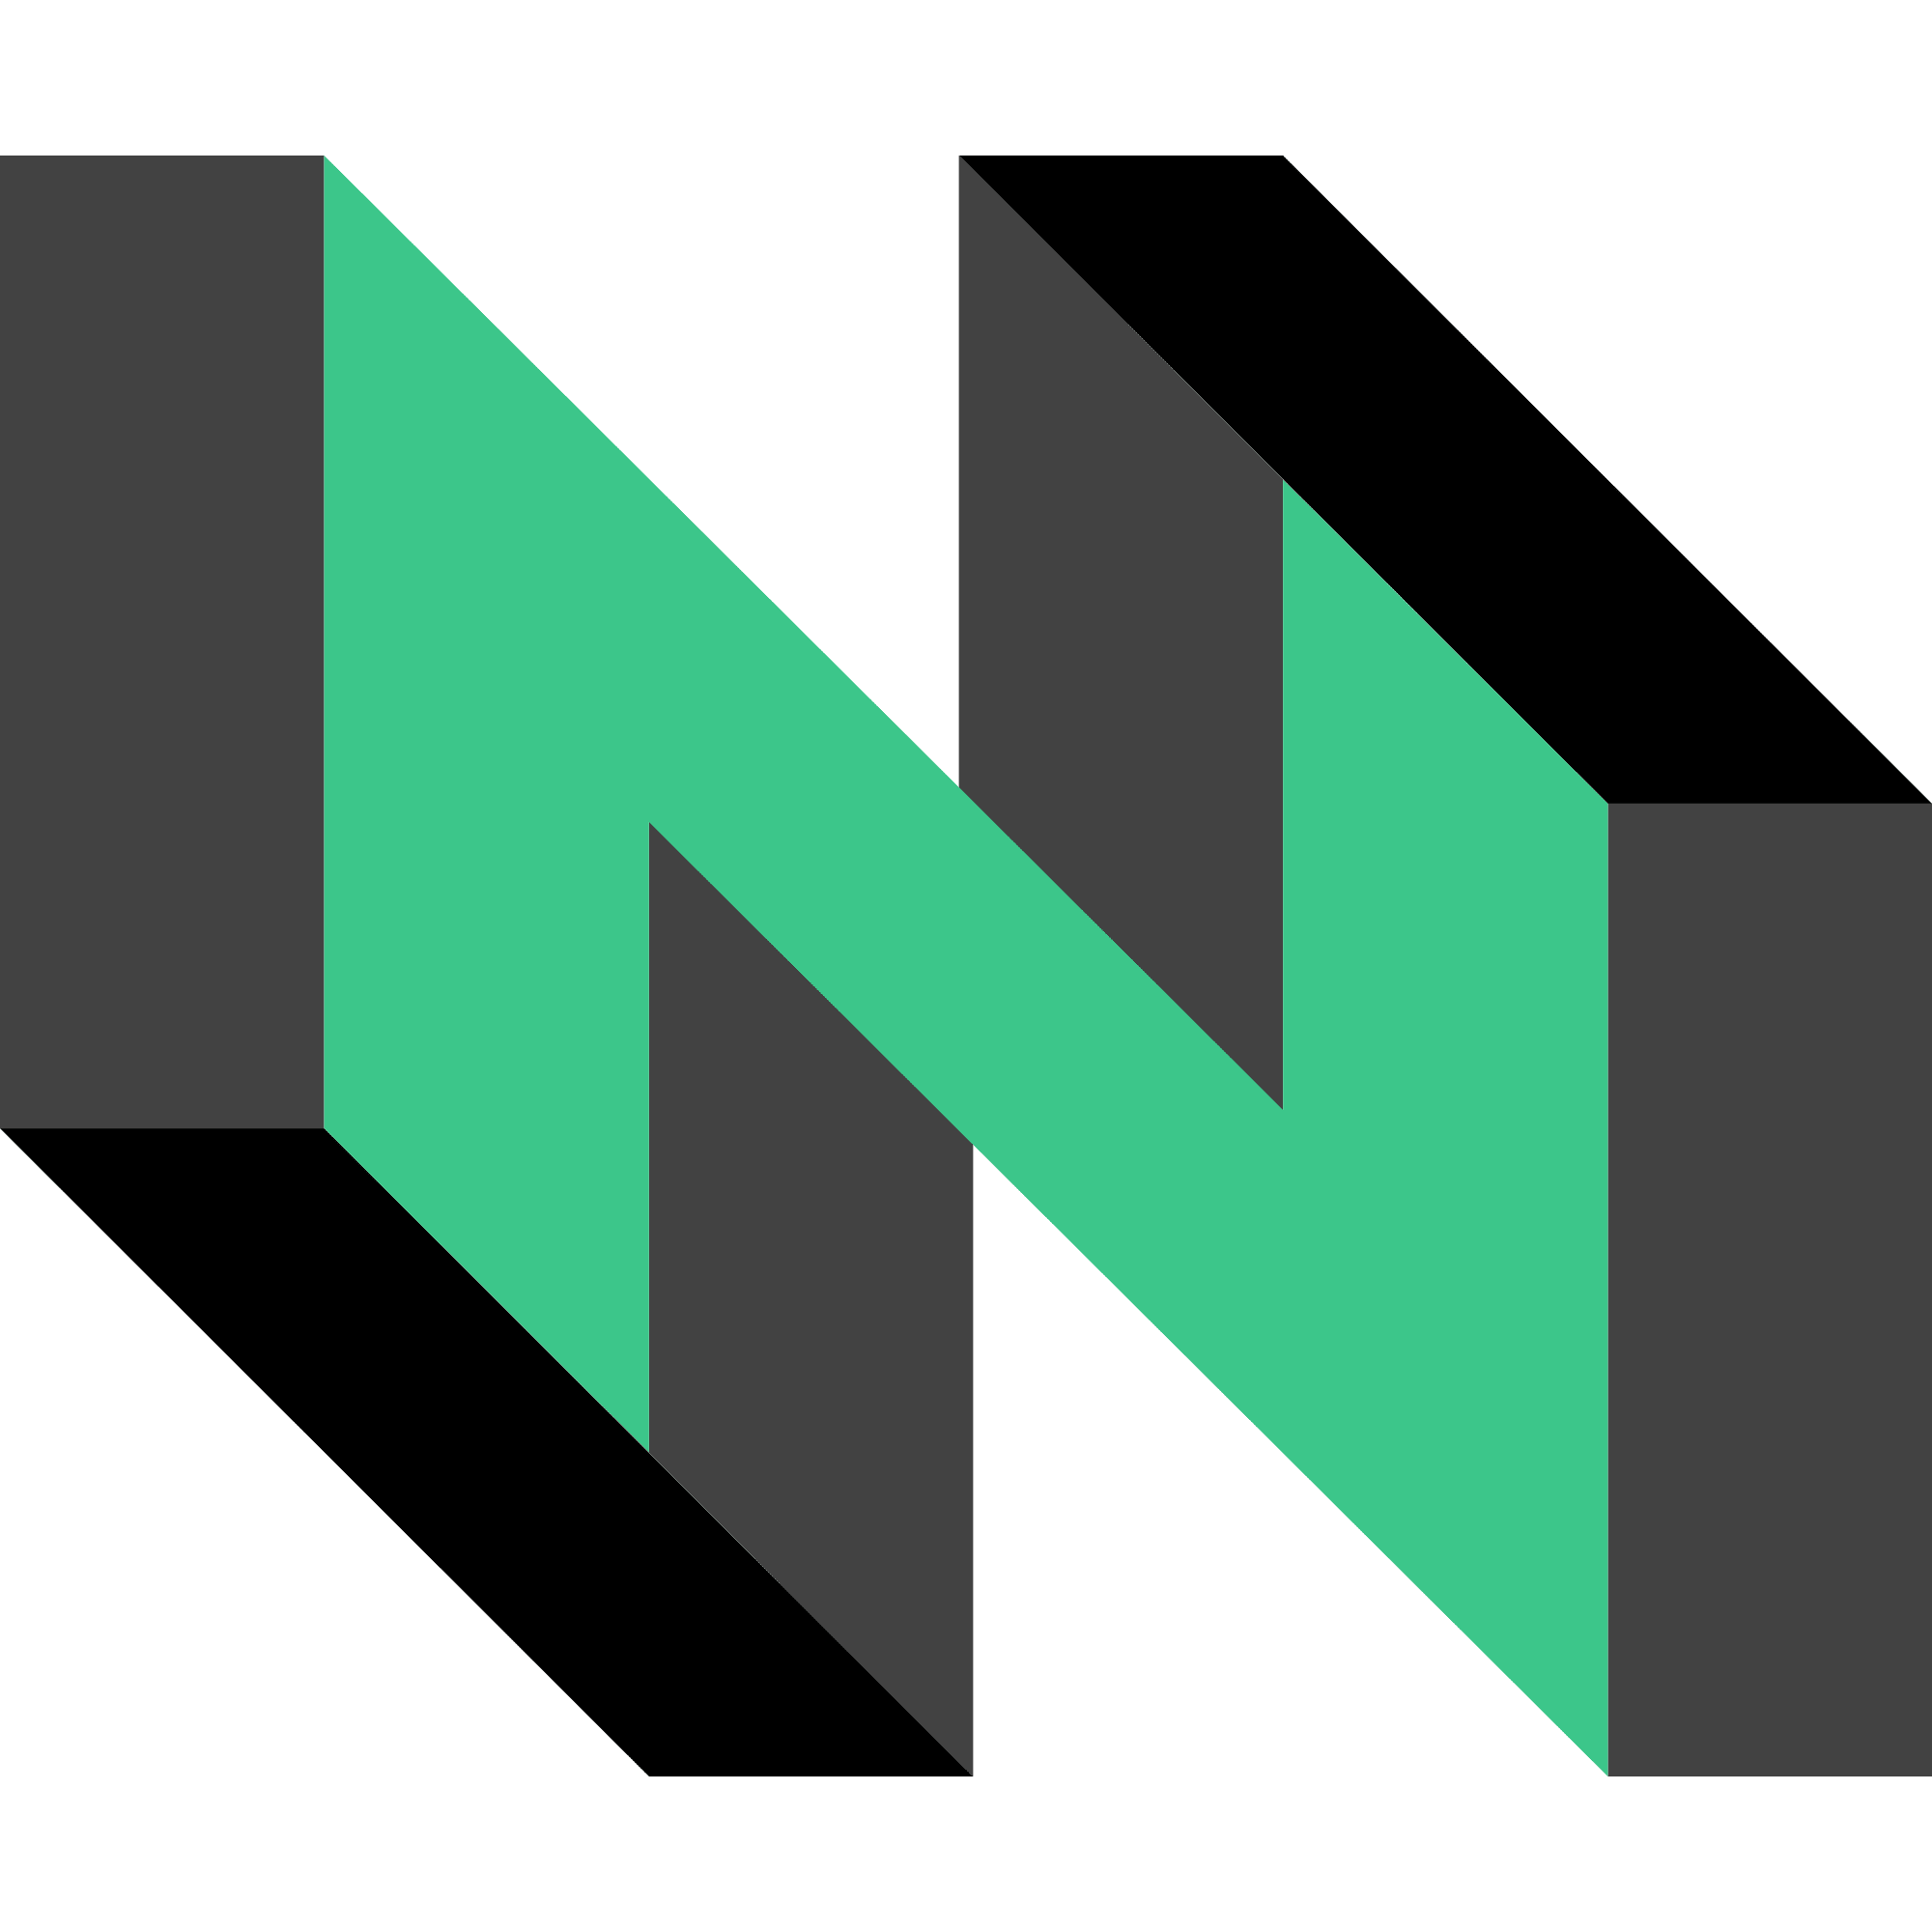 Nervos Network logo in png format